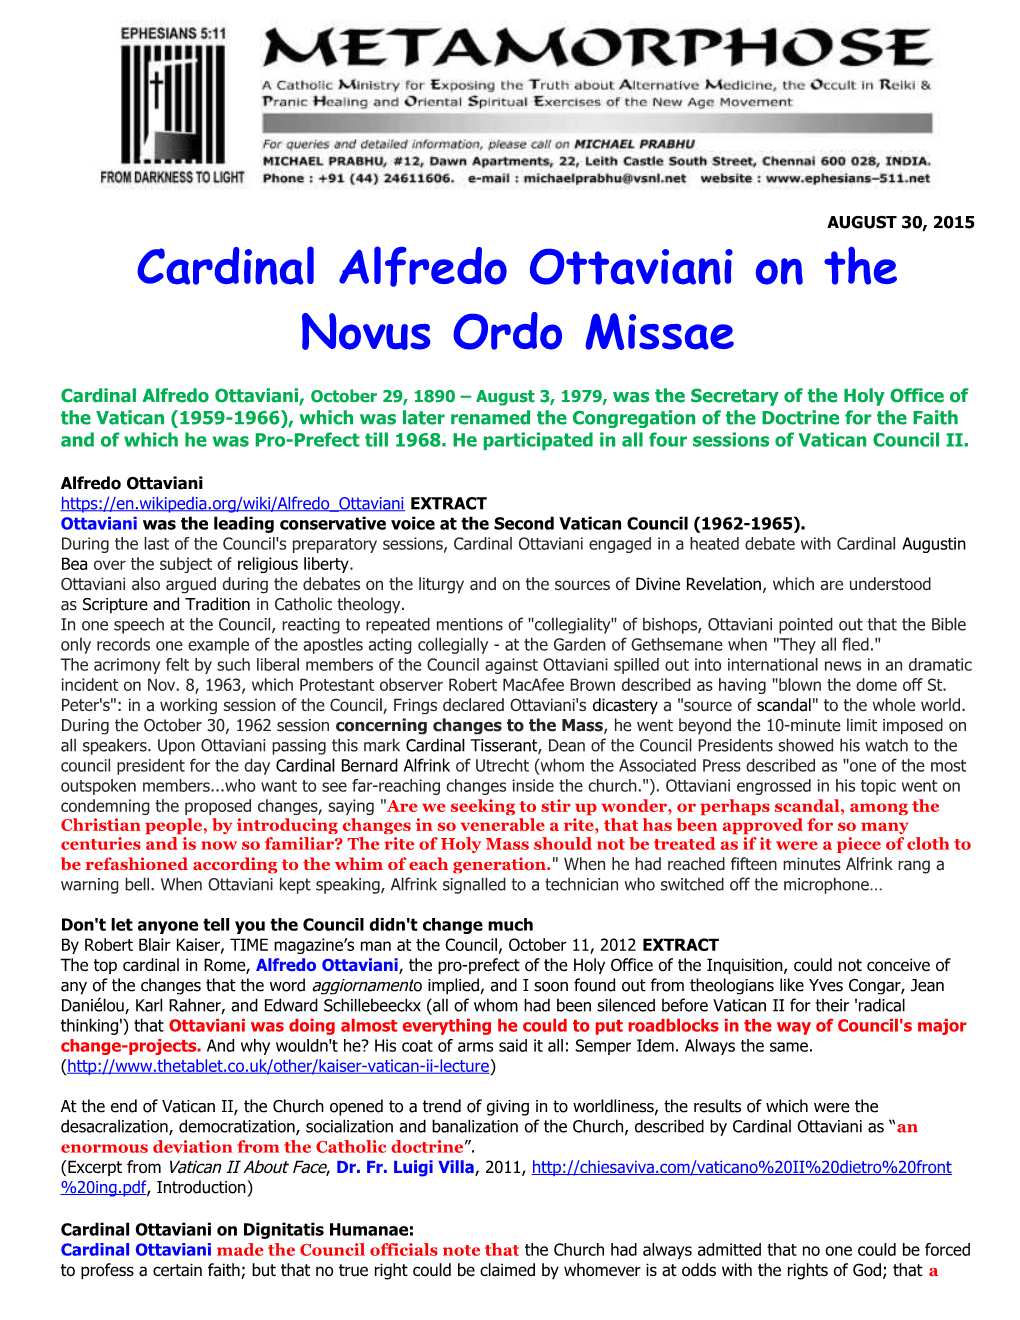 Cardinal Alfredo Ottaviani on the Novus Ordo Missae